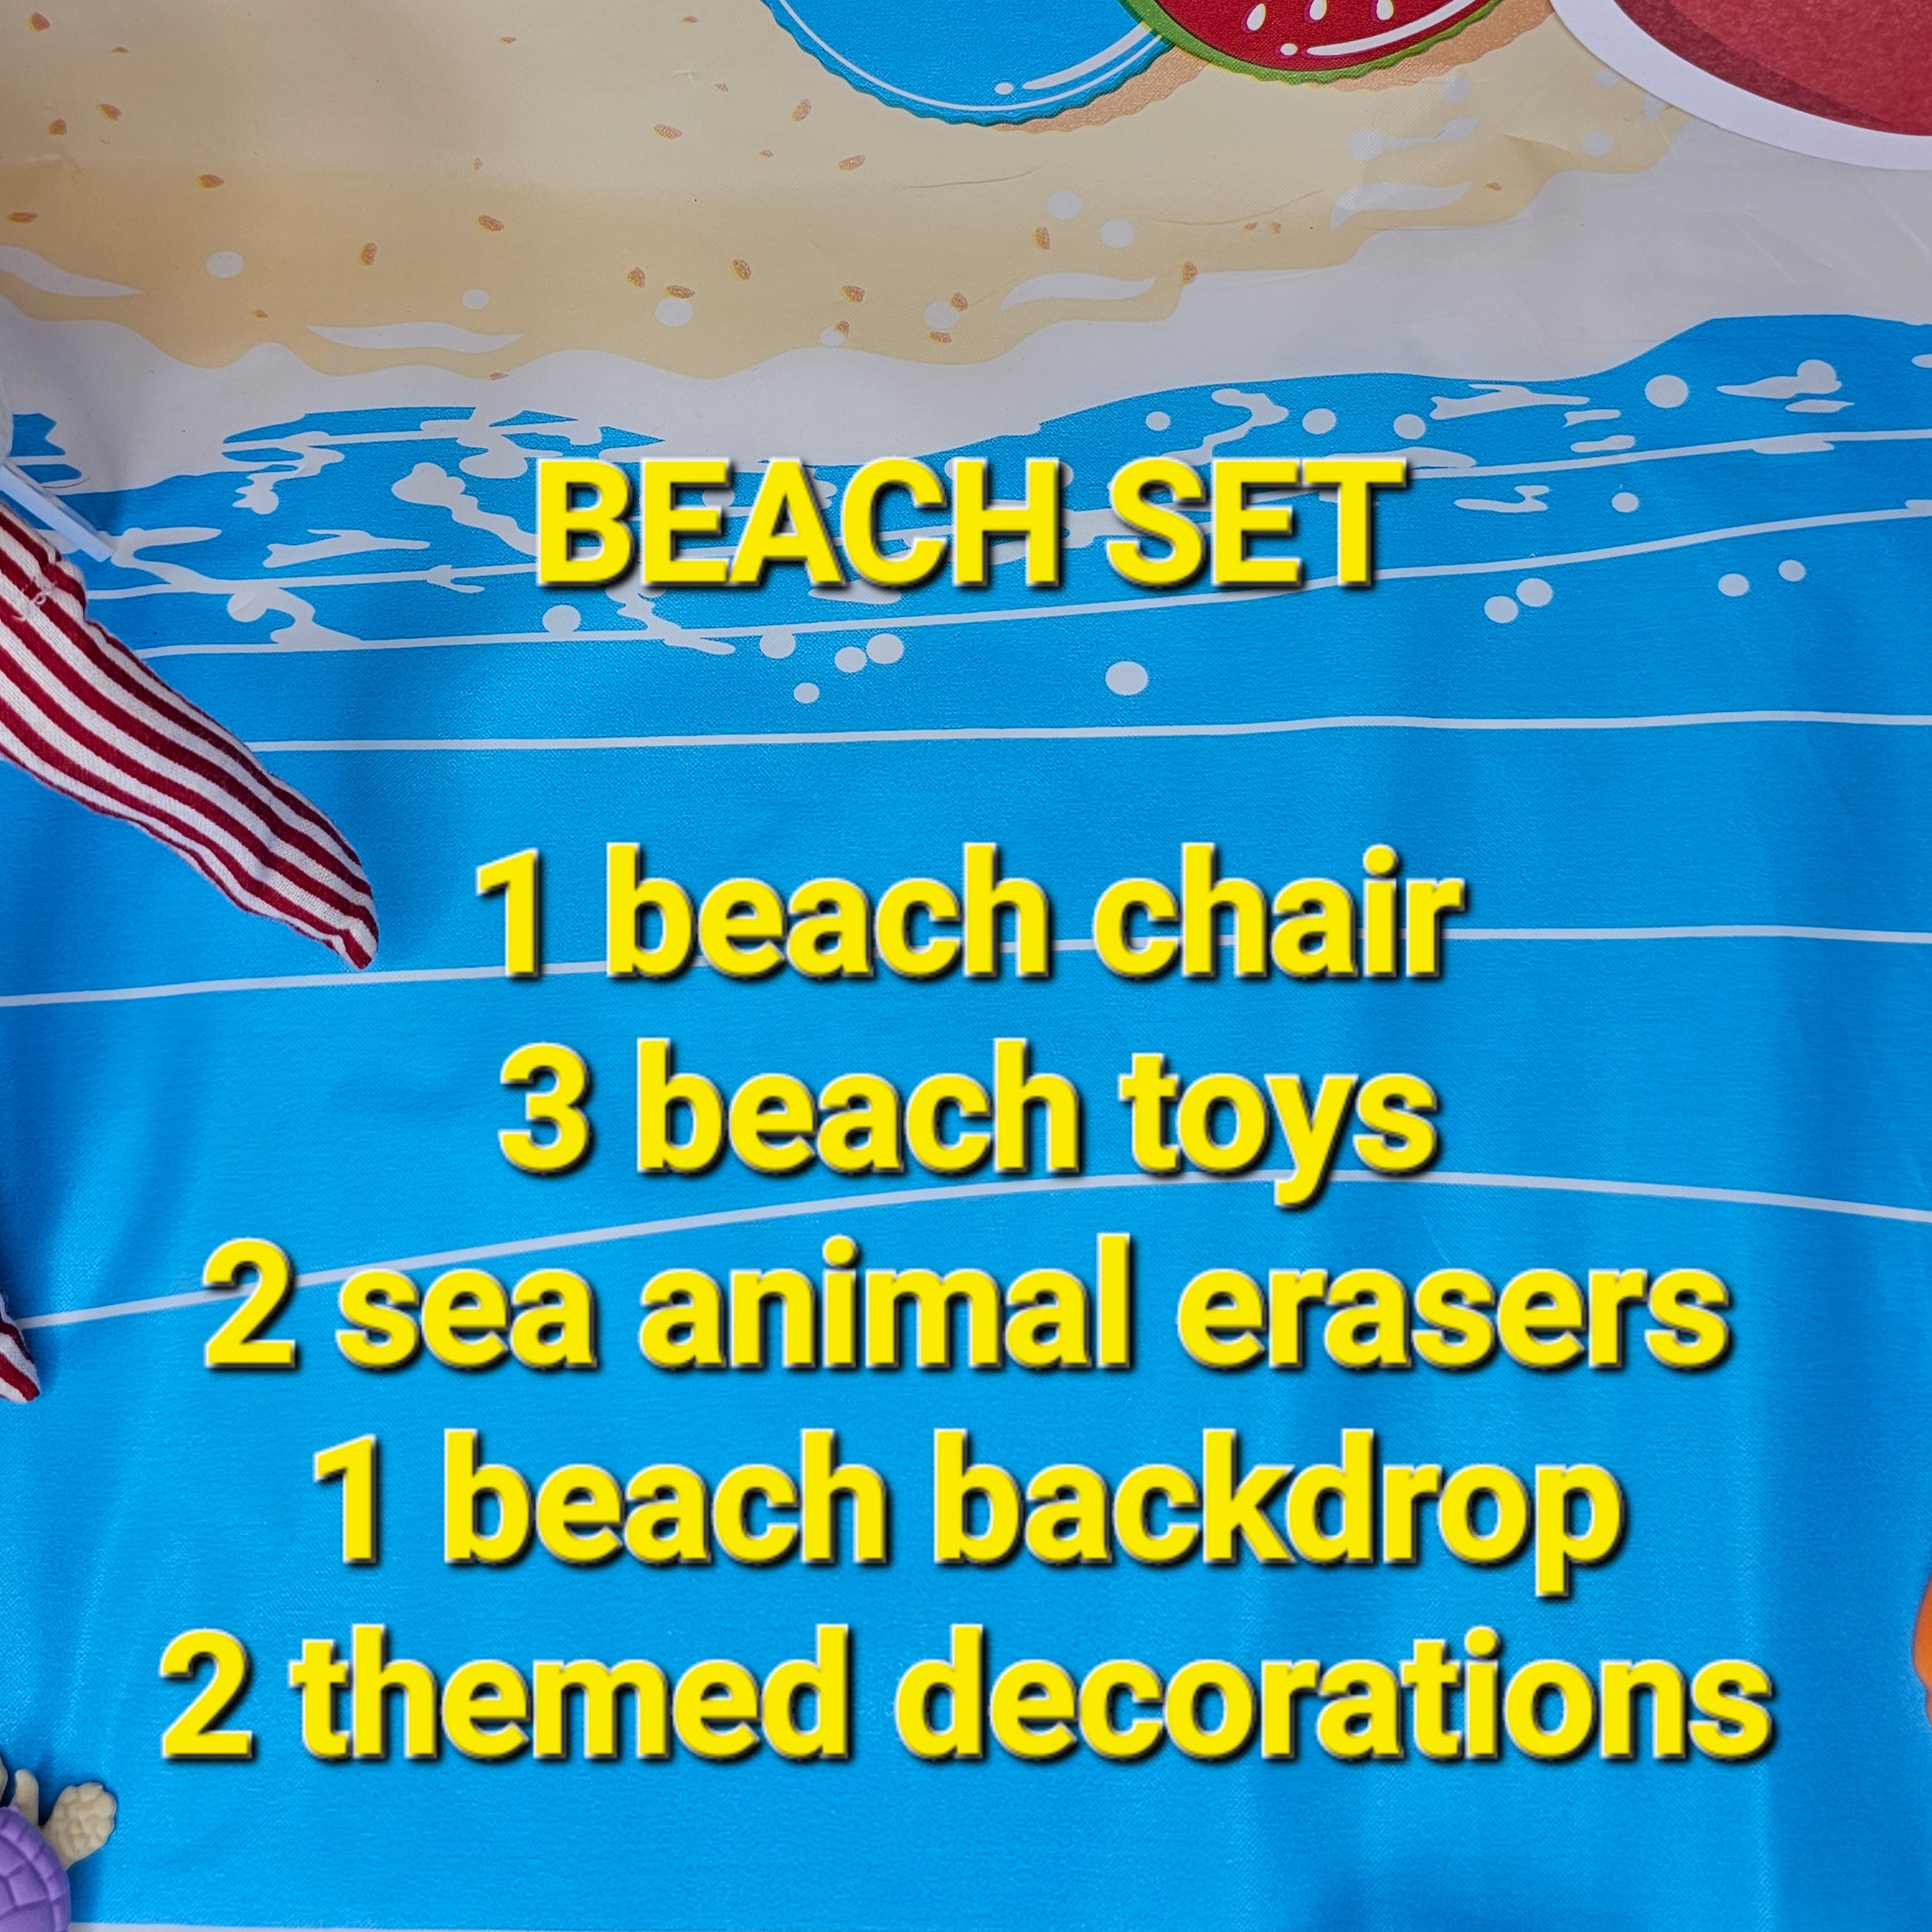 Beach Set - Deluxe 9pc set